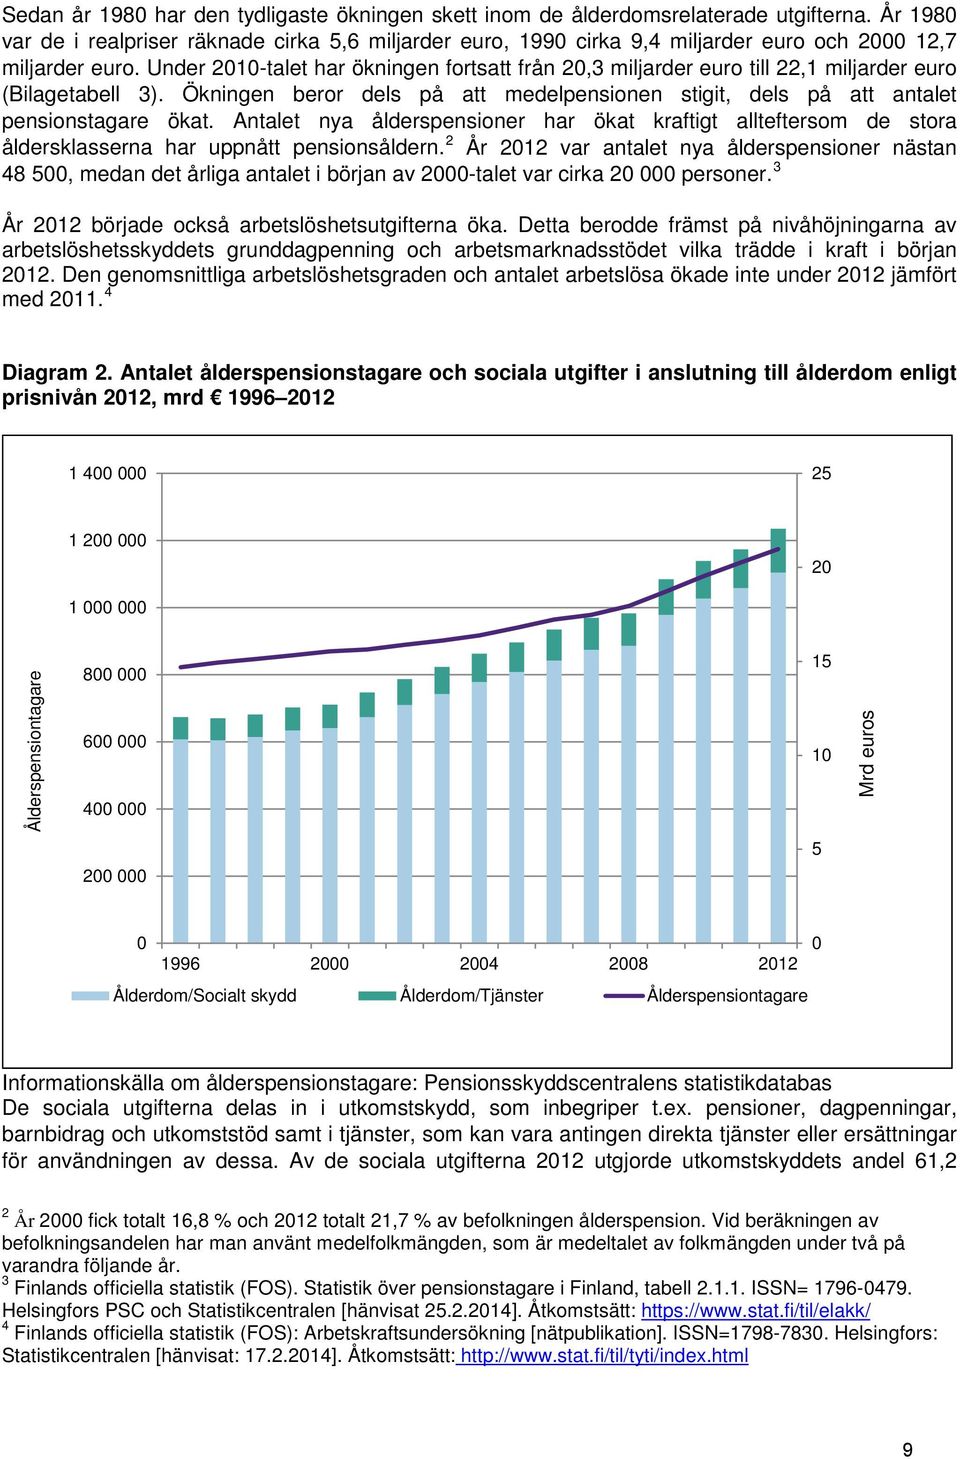 Under 2010-talet har ökningen fortsatt från 20,3 miljarder euro till 22,1 miljarder euro (Bilagetabell 3). Ökningen beror dels på att medelpensionen stigit, dels på att antalet pensionstagare ökat.